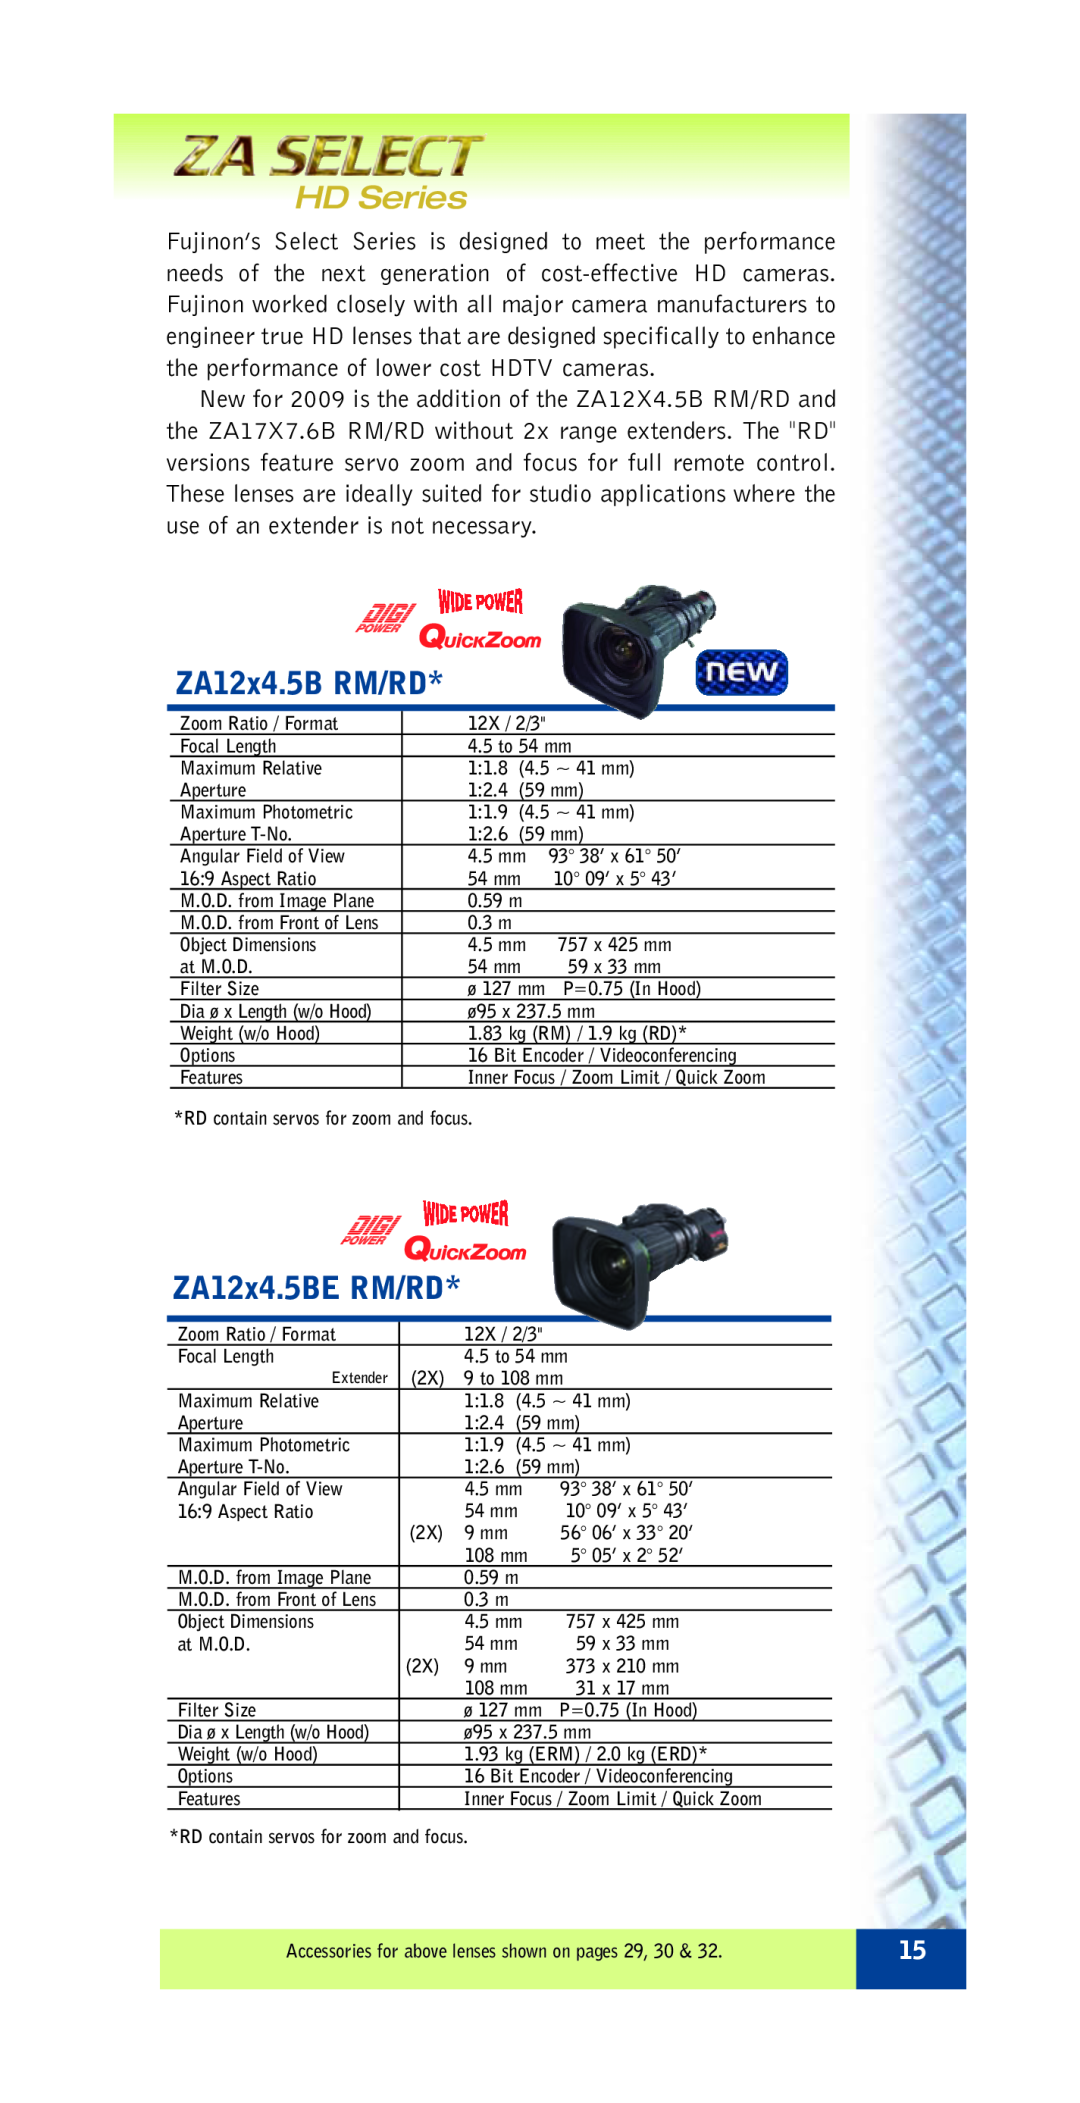 FujiFilm ZA12X4.5B RM/RD specifications HD Series, ZA12x4.5B RM/RD, ZA12x4.5BE RM/RD 